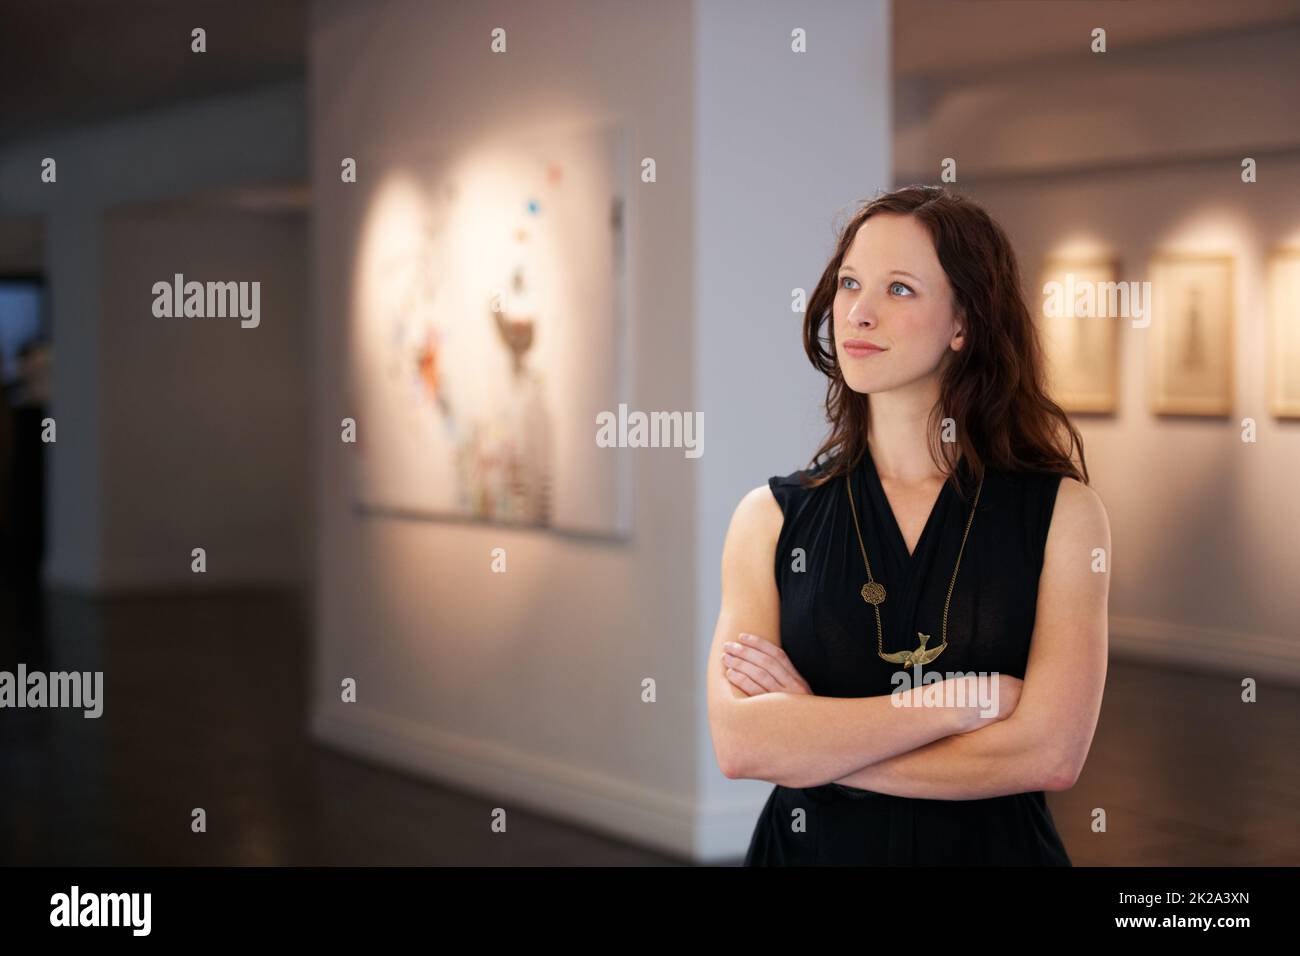 Ein Jahrhundert der Kunst. Aufnahme einer jungen Frau, die in einer Galerie Gemälde ansieht. Stockfoto